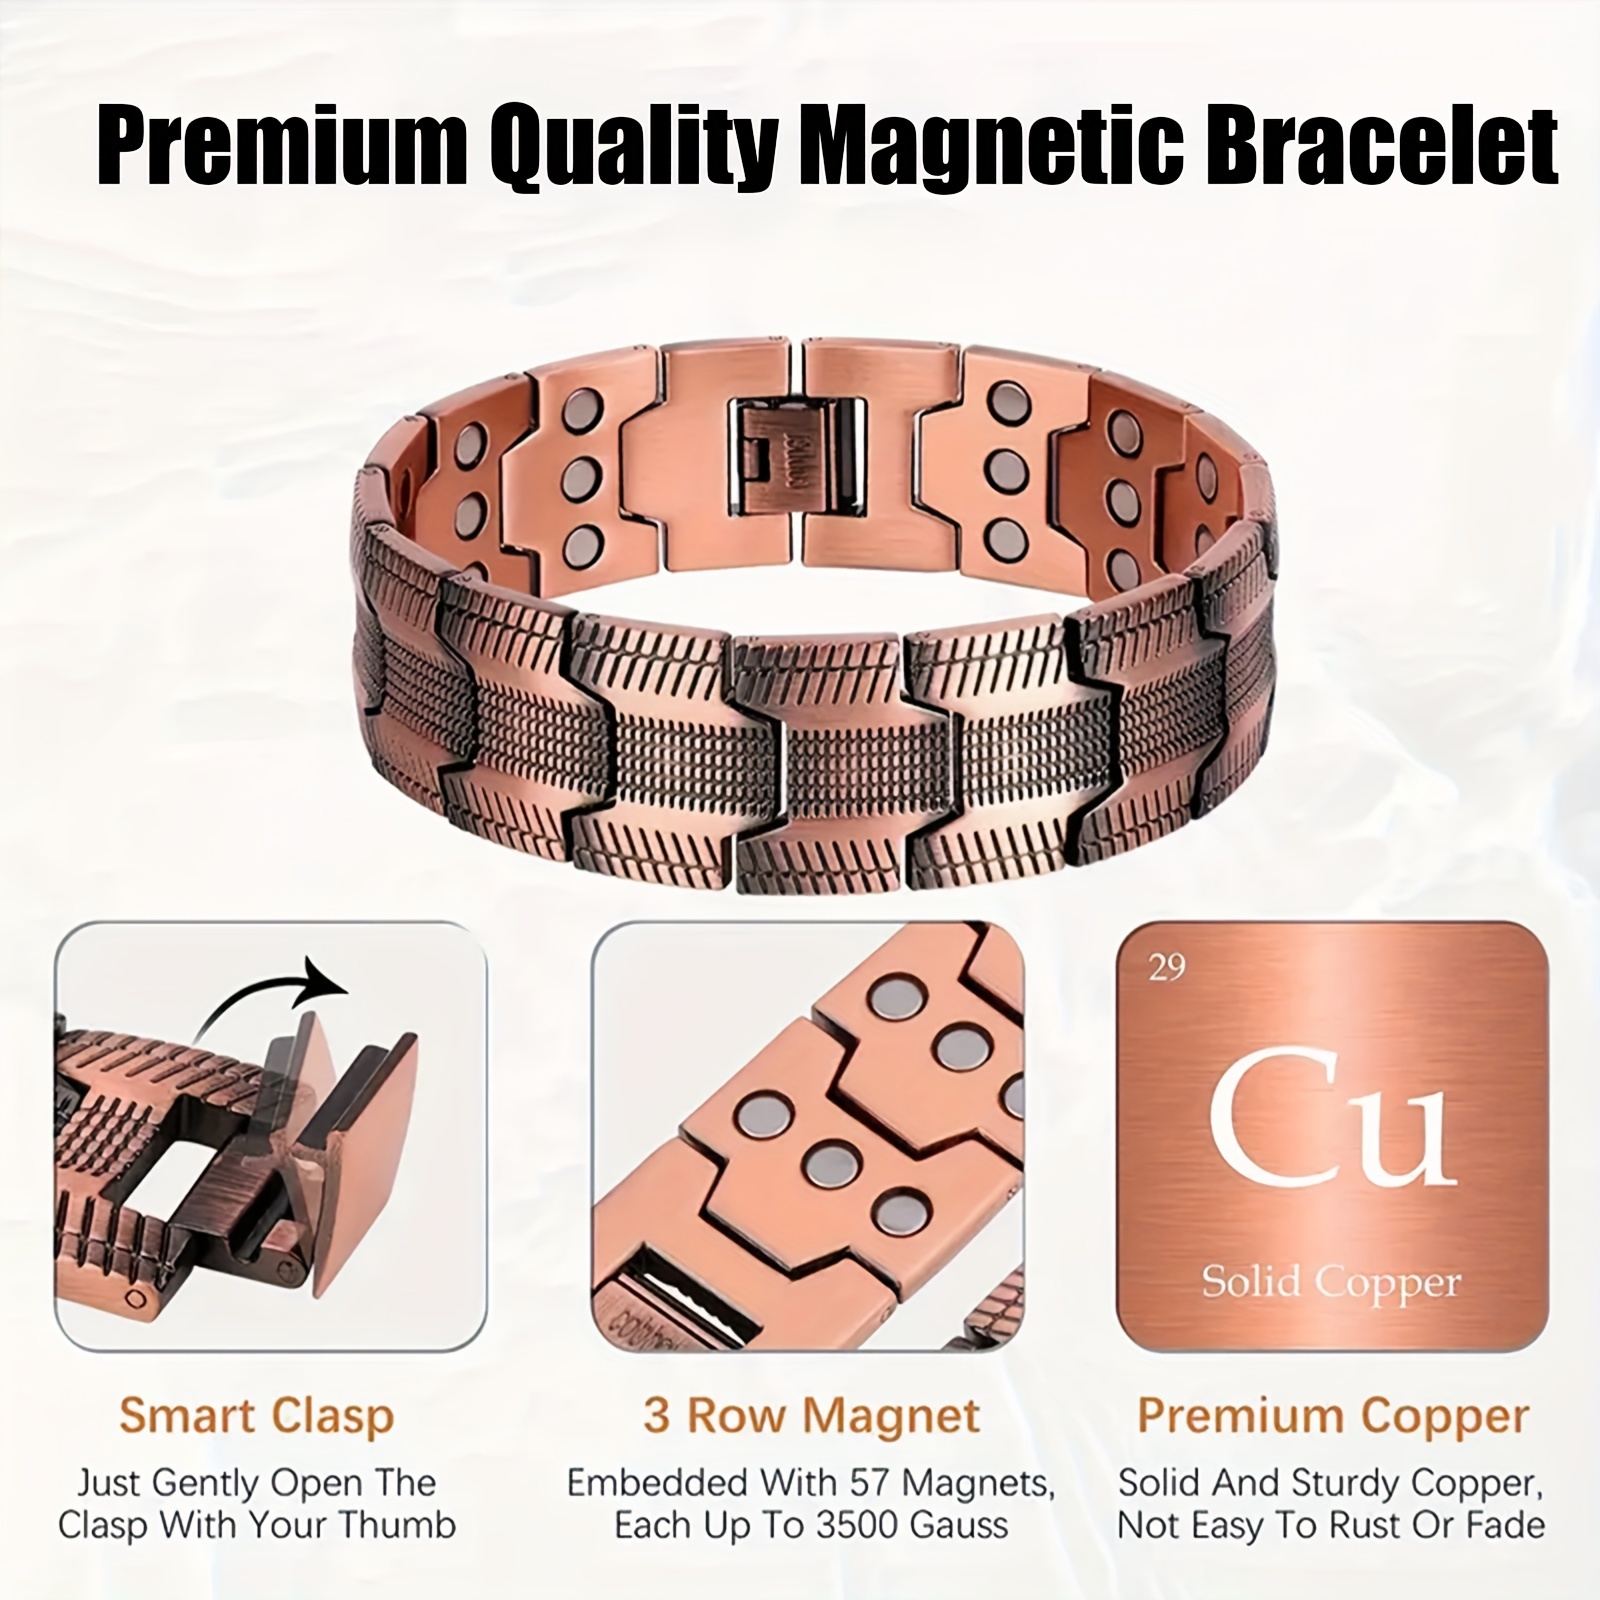 Solid copper magnetic bracelet, copper bracelets for arthritis